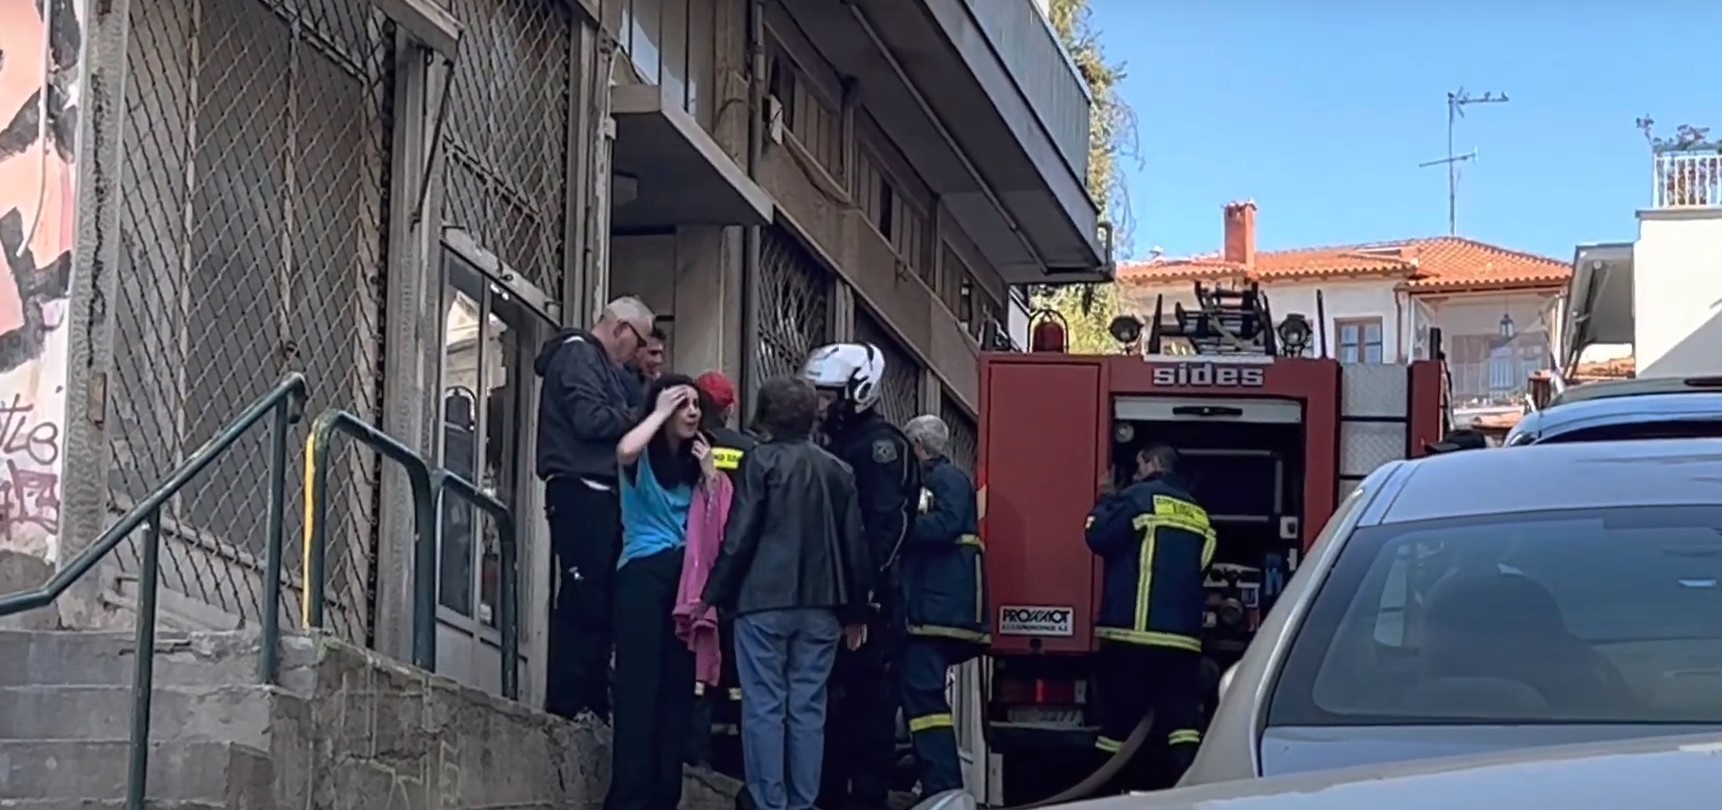 Θεσσαλονίκη: Δύο άτομα απεγκλωβίστηκαν από φωτιά σε διαμέρισμα στην περιοχή της οδού Ολυμπιάδος